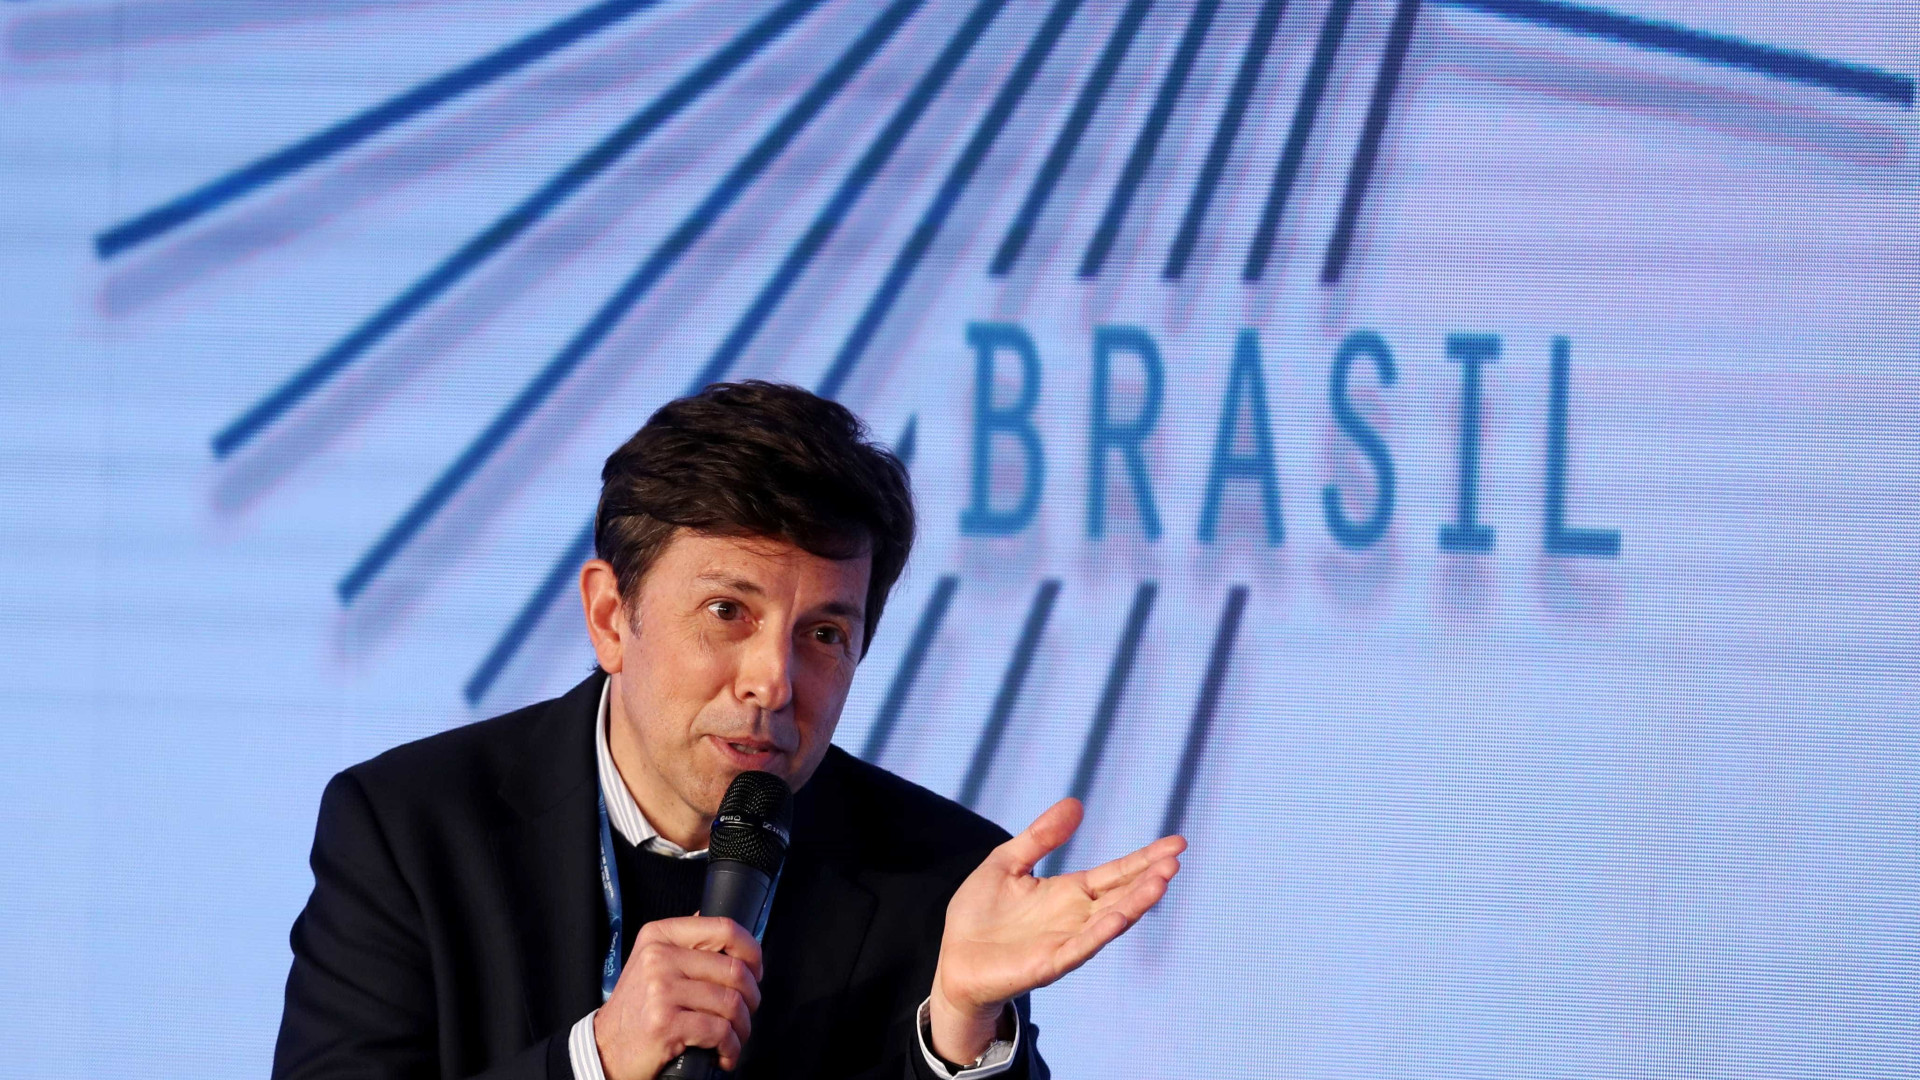 Partido Novo se posiciona contra PT, mas não declara apoio a Bolsonaro